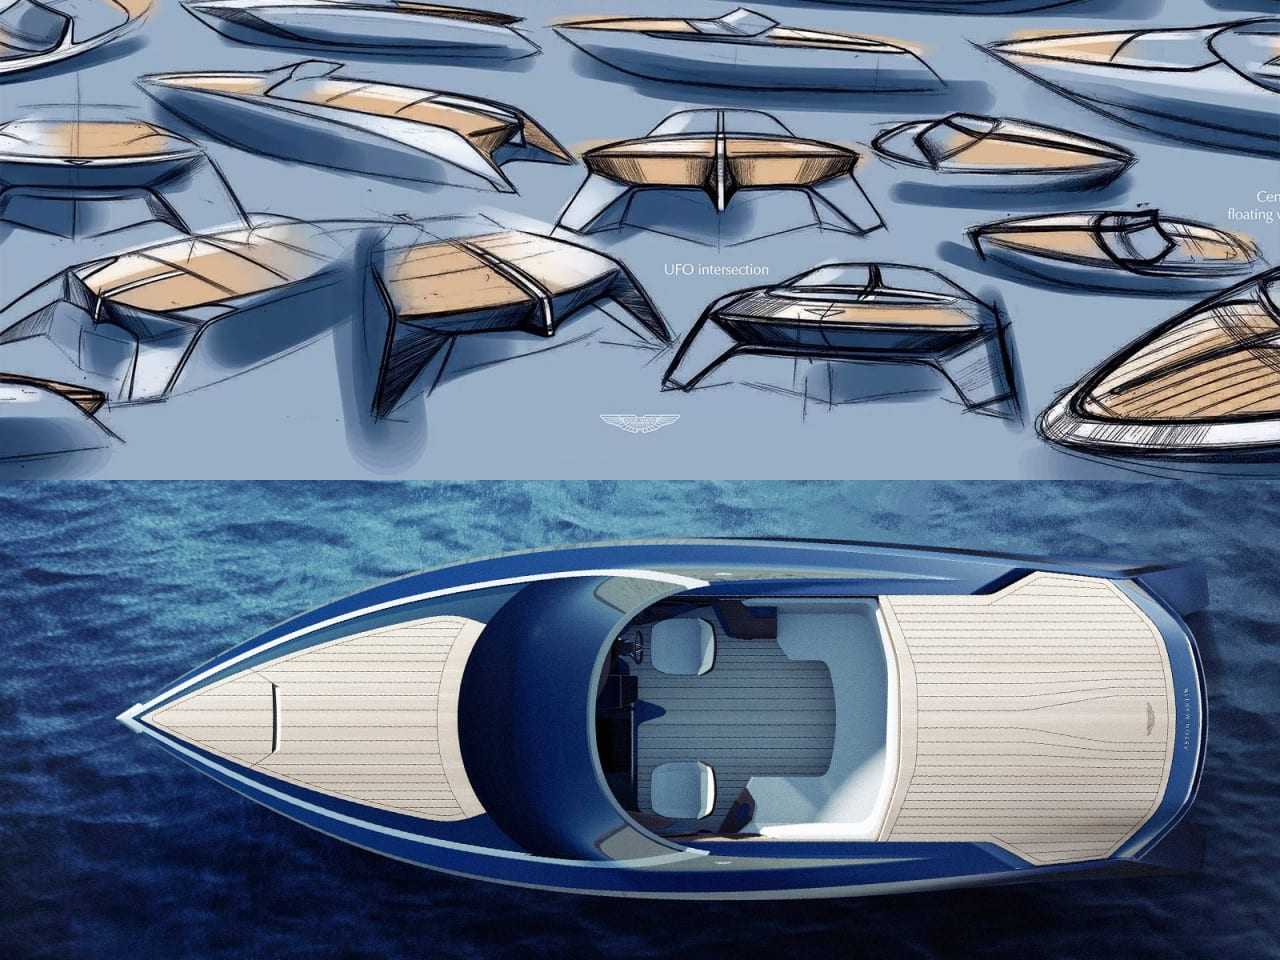 Aston-Martin-previews-powerboat-design-at-Milan-Design-Week